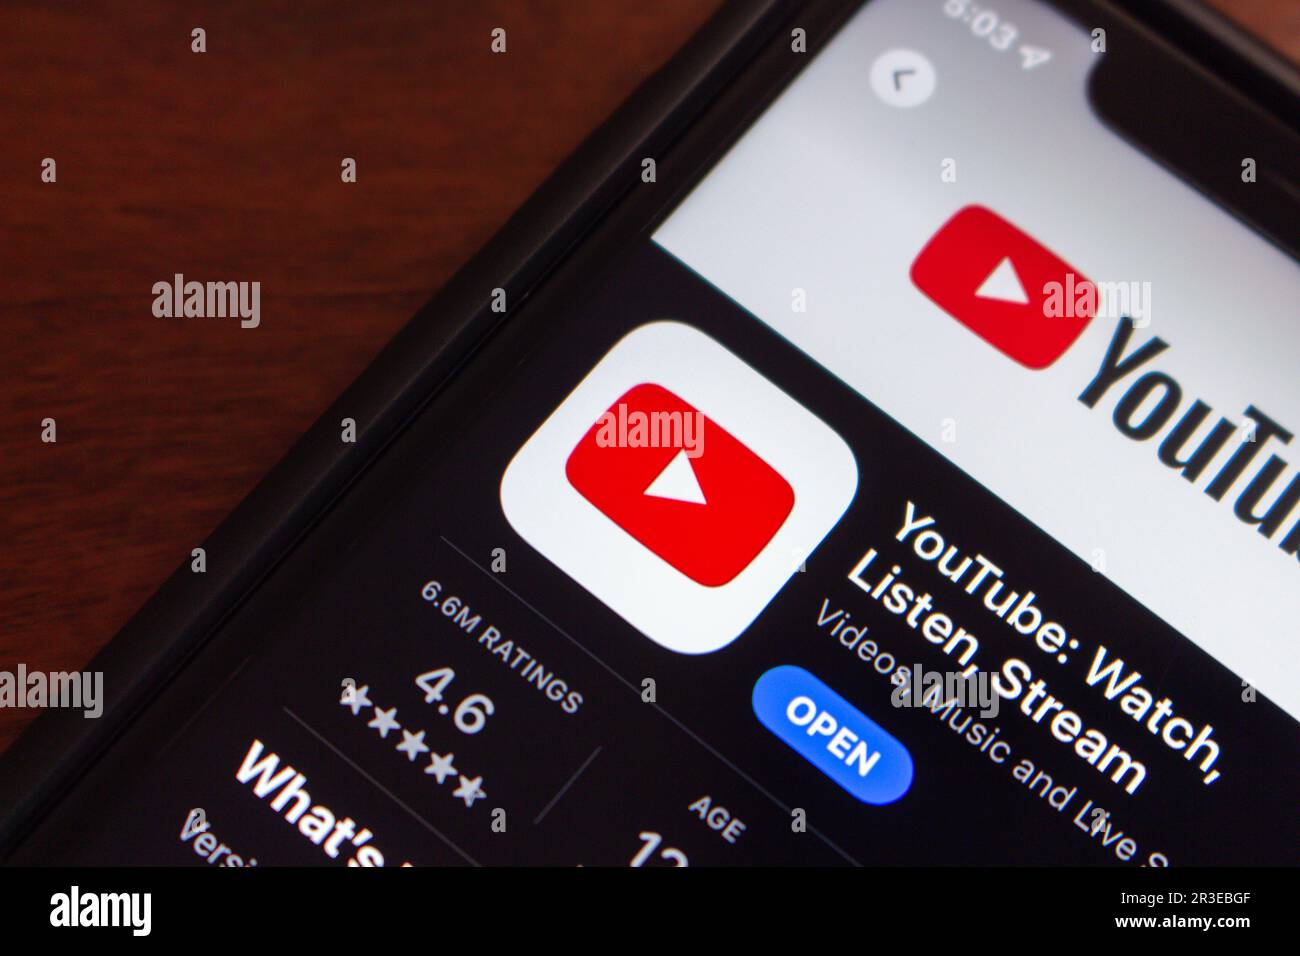 Icône de l'application YouTube affichée dans un App Store sur l'écran d'un iPhone. YouTube est une plate-forme américaine de partage de vidéos et de réseaux sociaux en ligne appartenant à Google. Banque D'Images